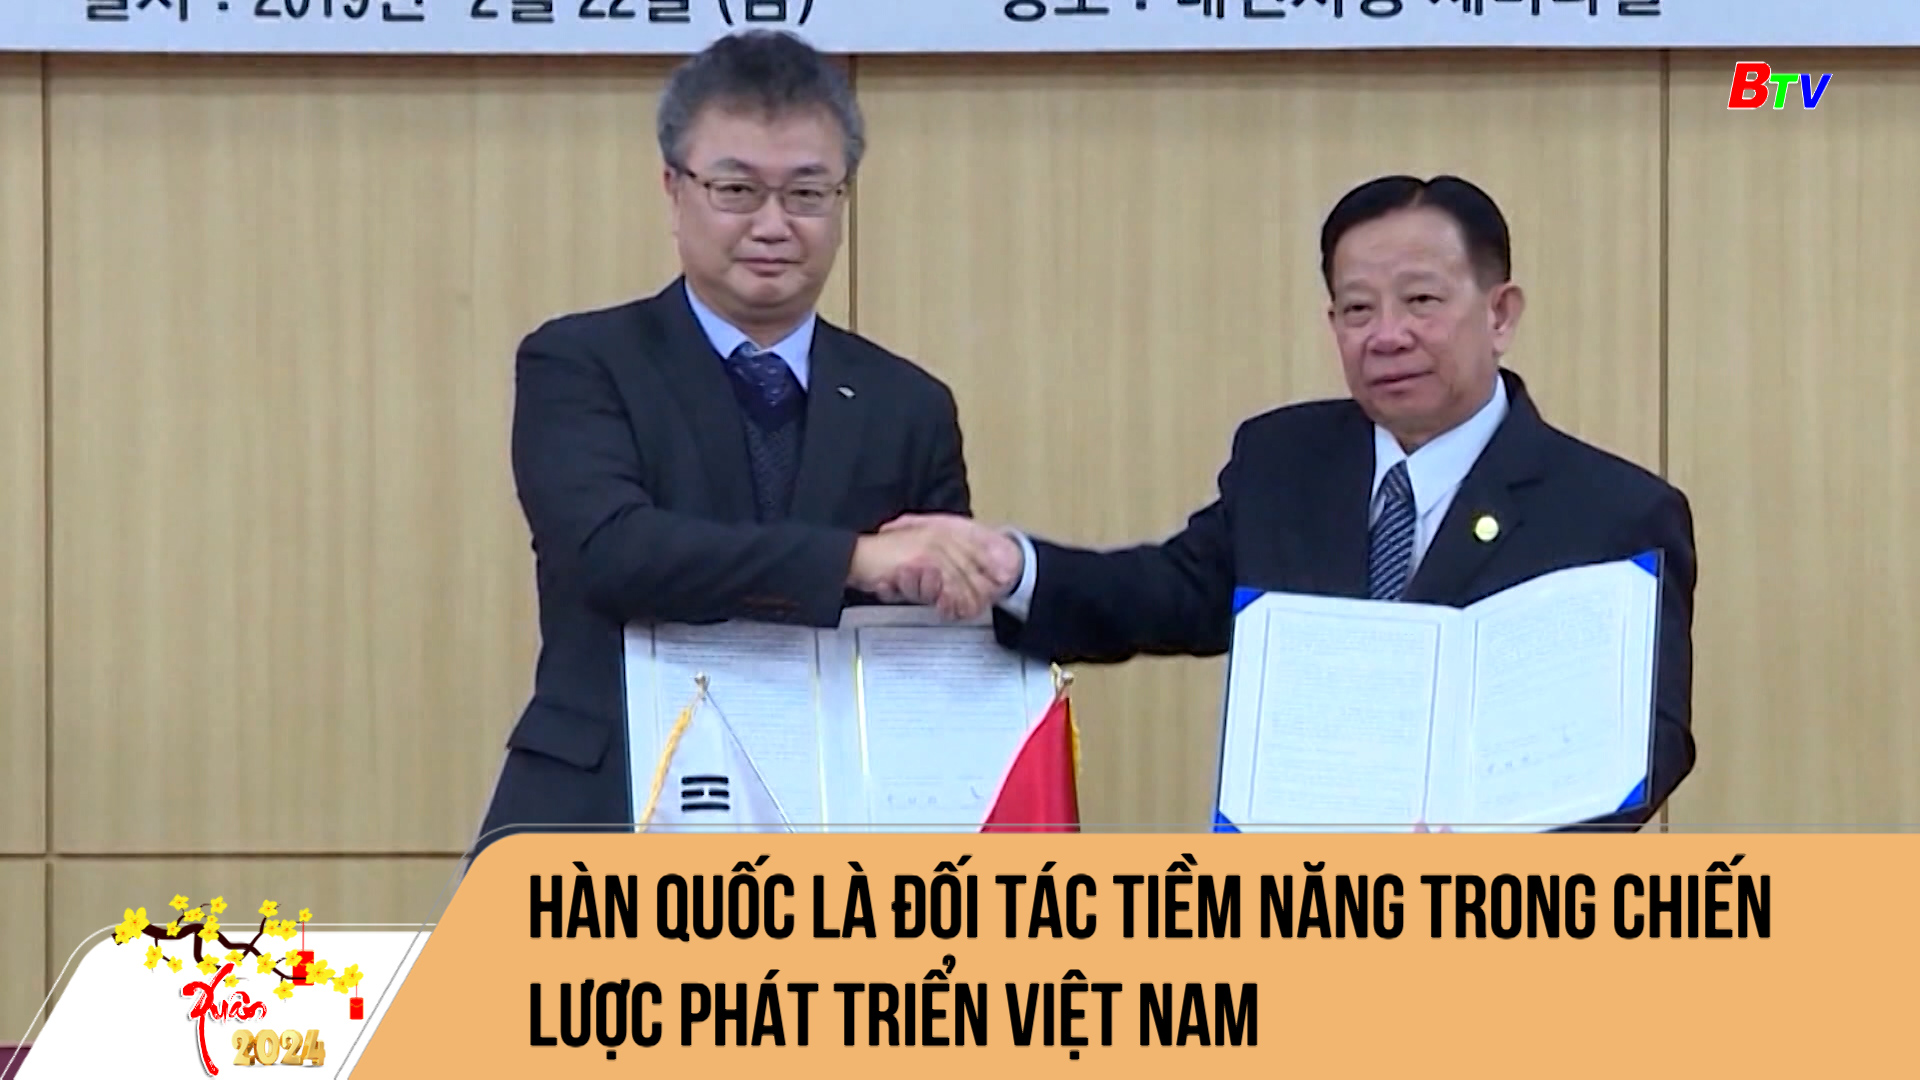 Hàn Quốc là đối tác tiềm năng trong chiến lược phát triển Việt Nam